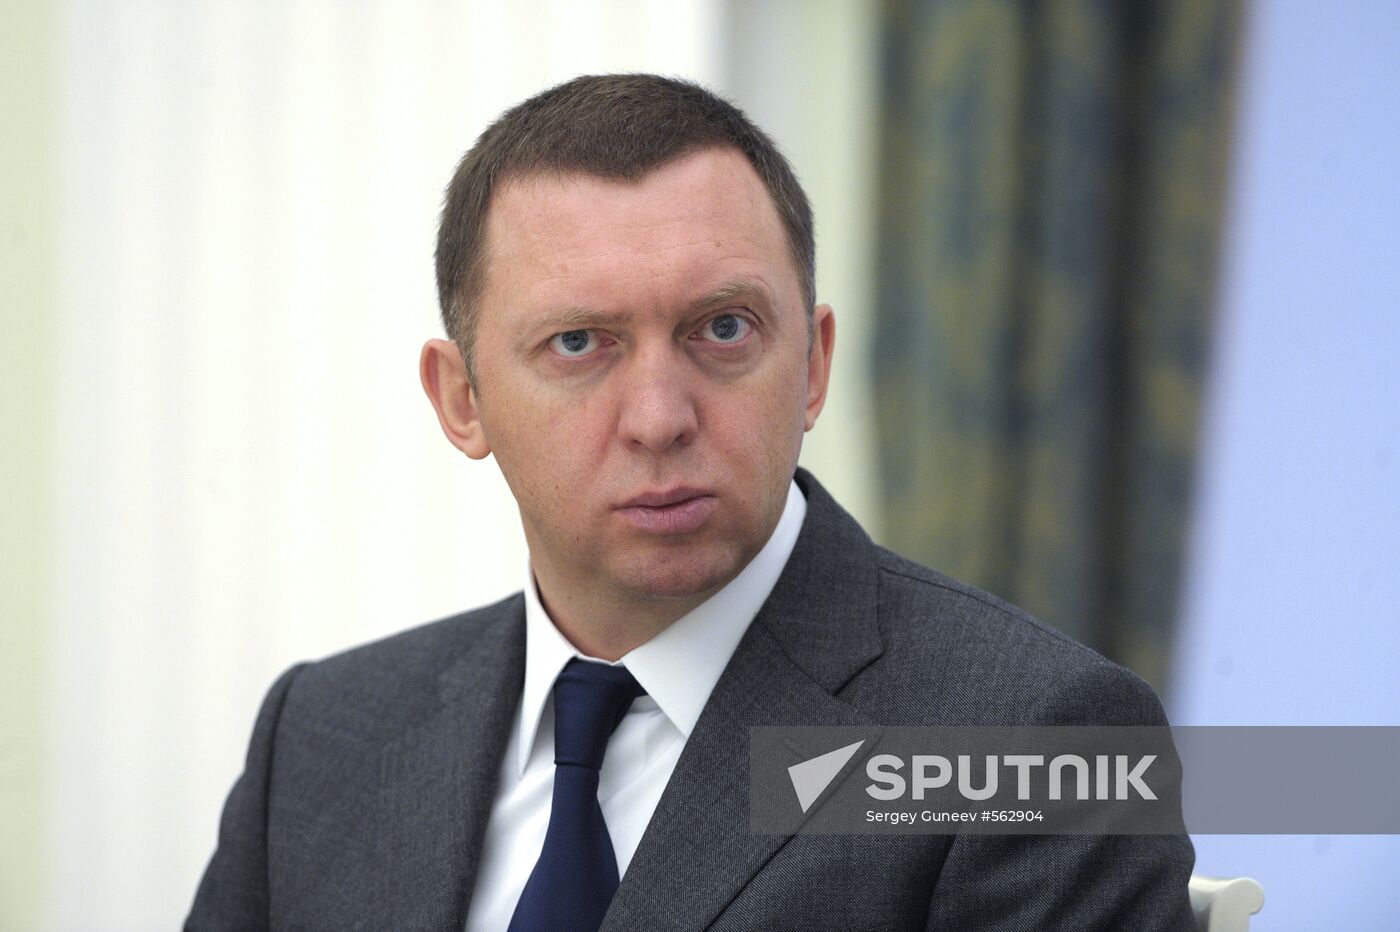 Head of Russian Aluminum Oleg Deripaska